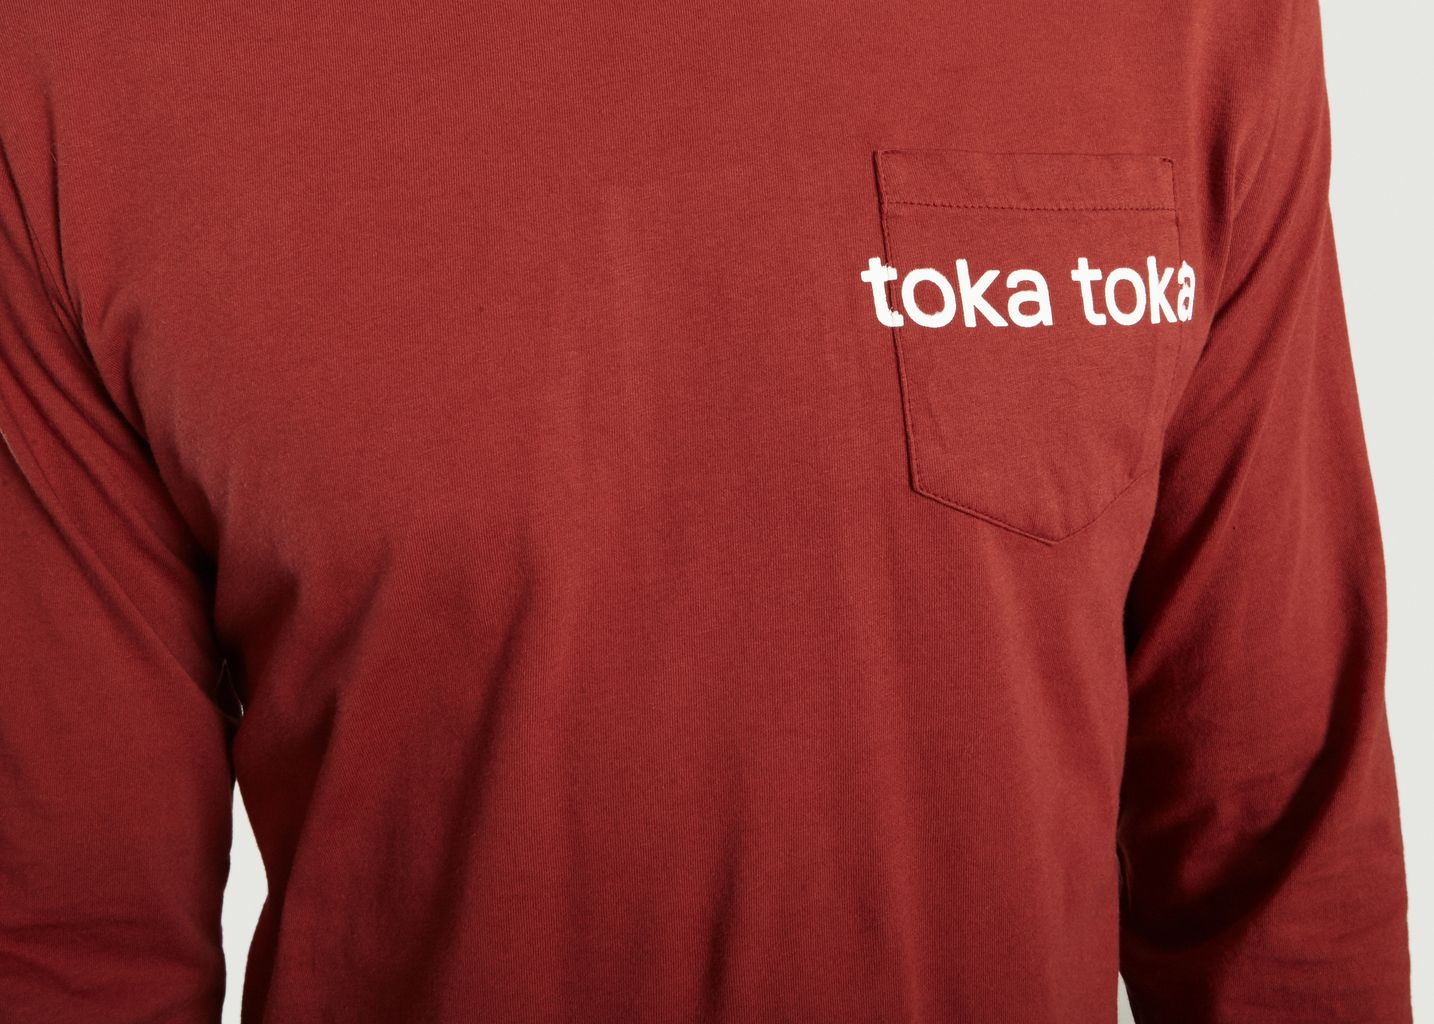 T-Shirt Logotypé Combloux - Toka Toka